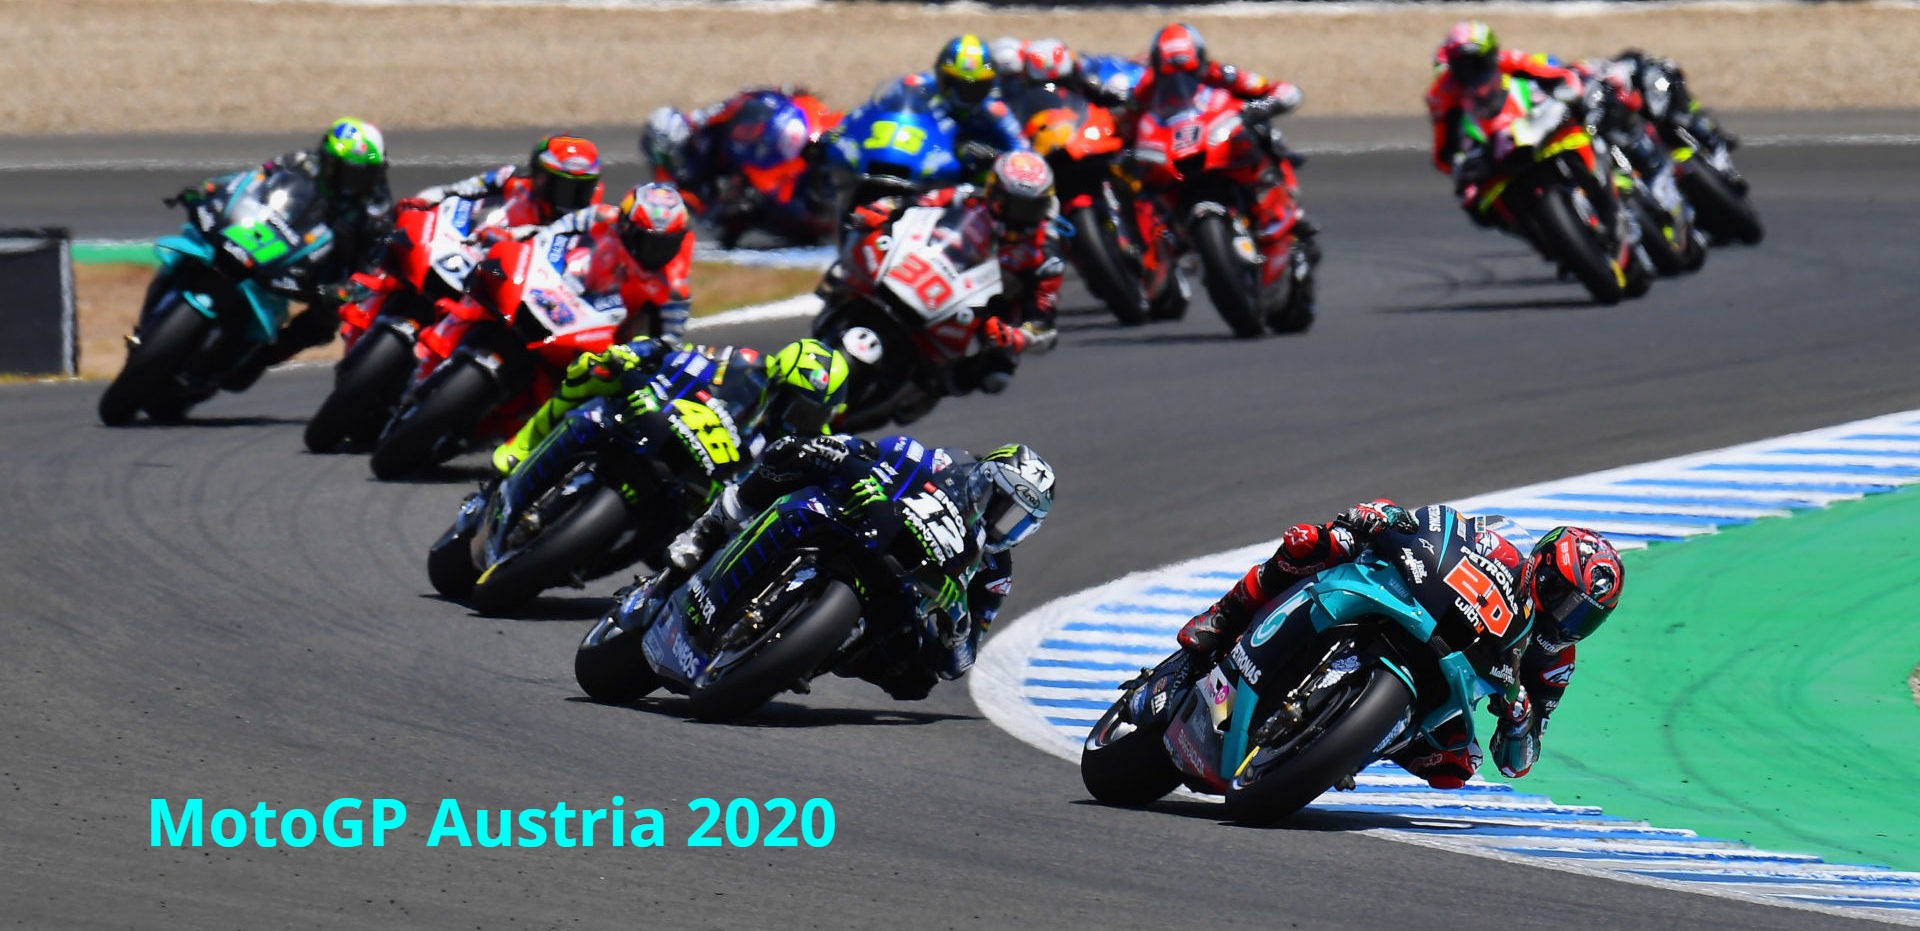 MotoGP Austria 2020